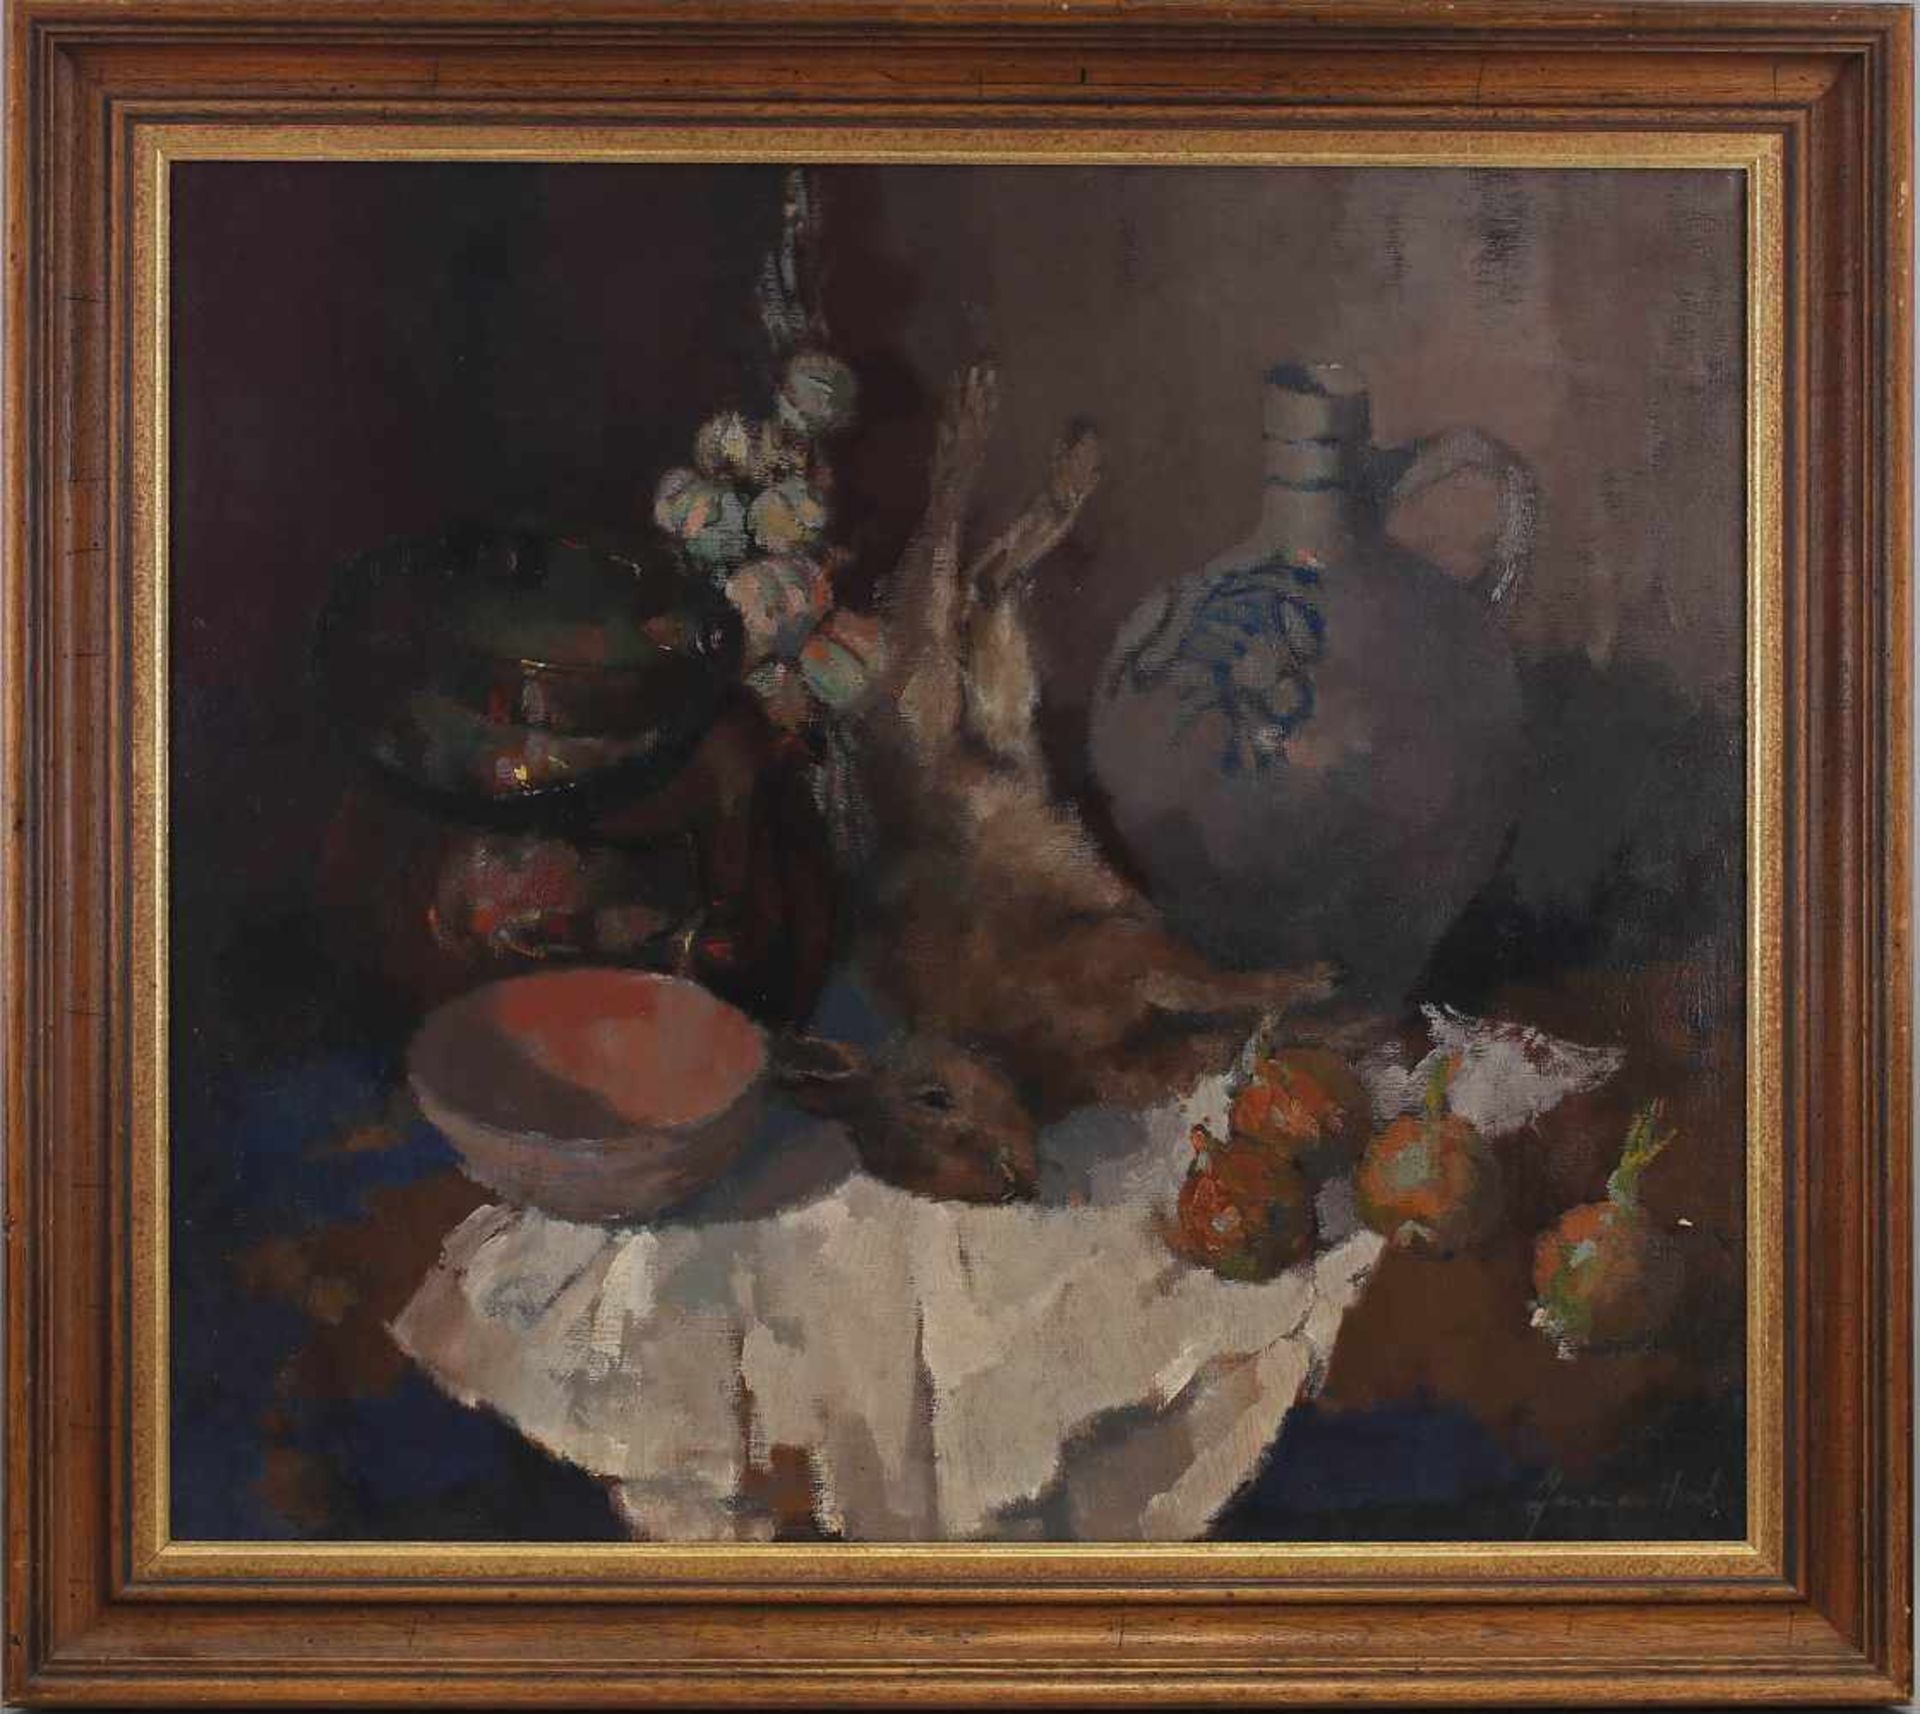 van den Hurk, Stillleben mit Hase re. u. sign. "Jan van den Hurk", niederländischer Maler, 1917-